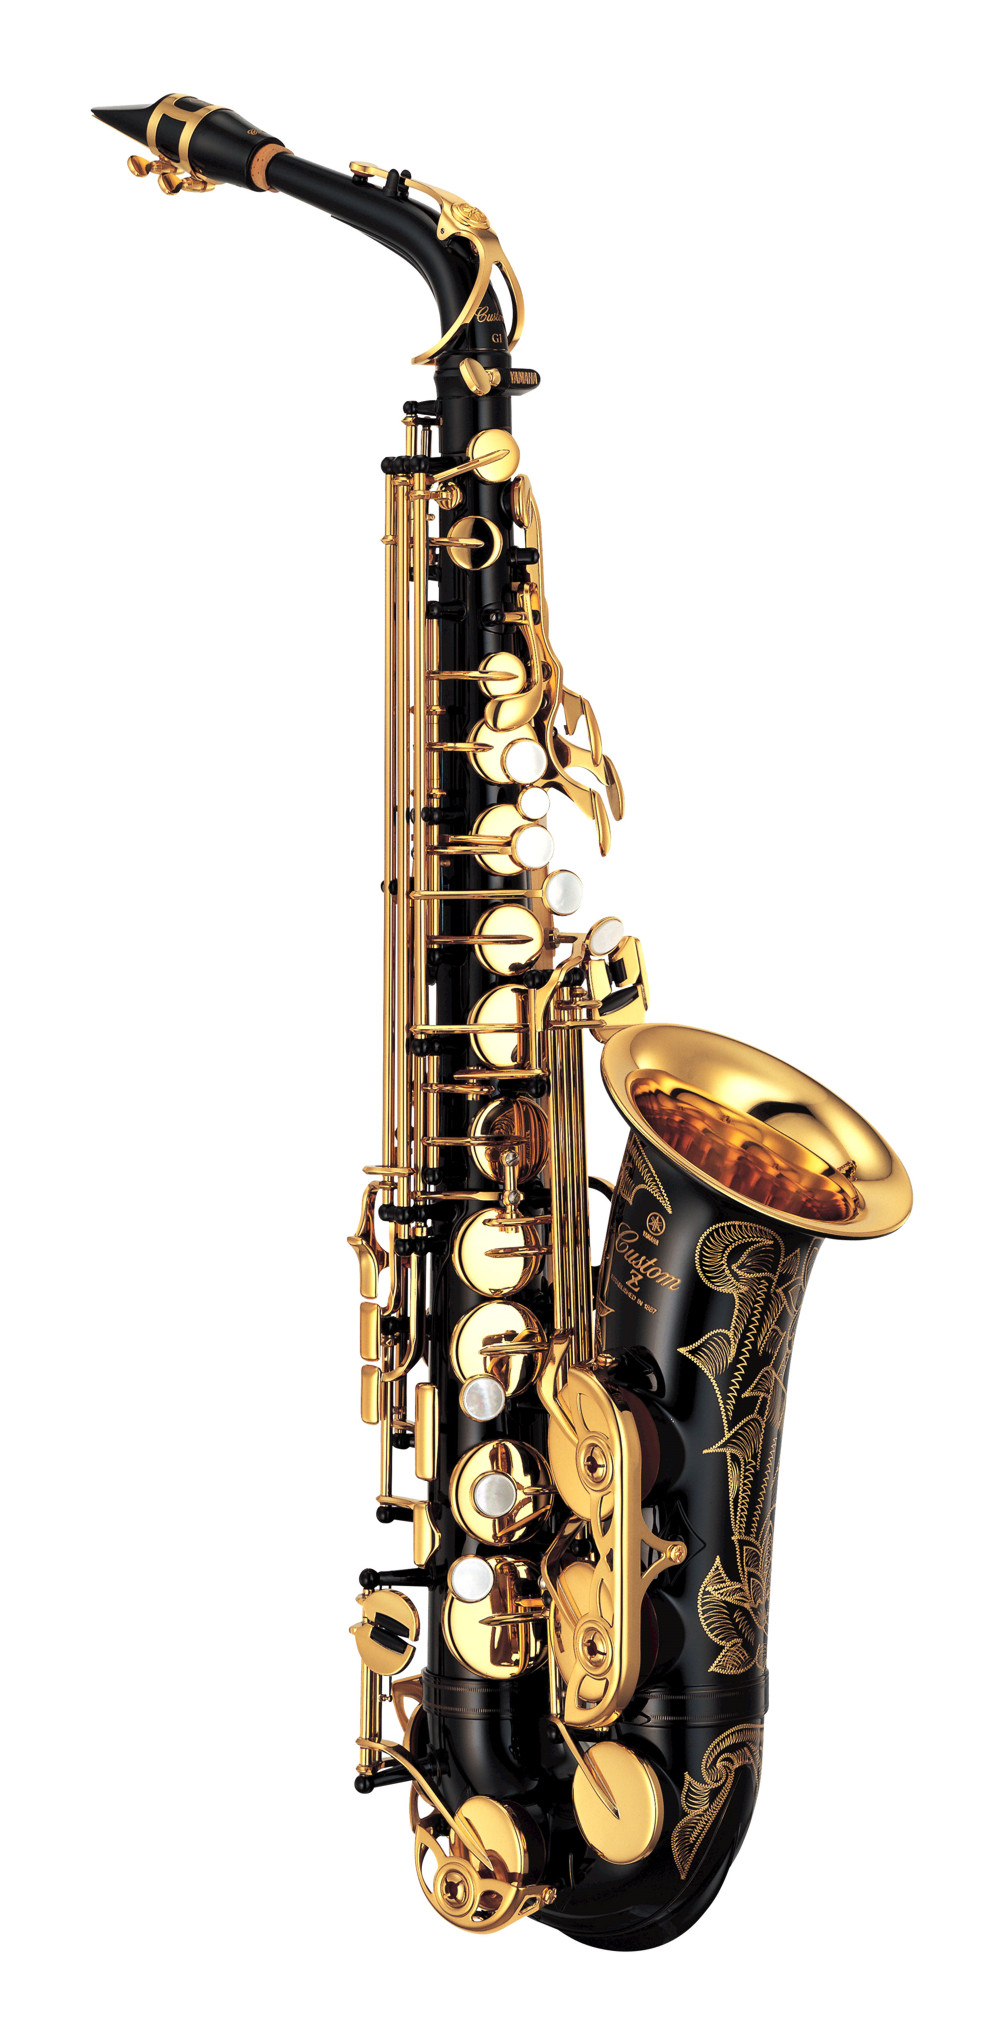 Saxofon altový Yamaha  YAS 82ZB 03